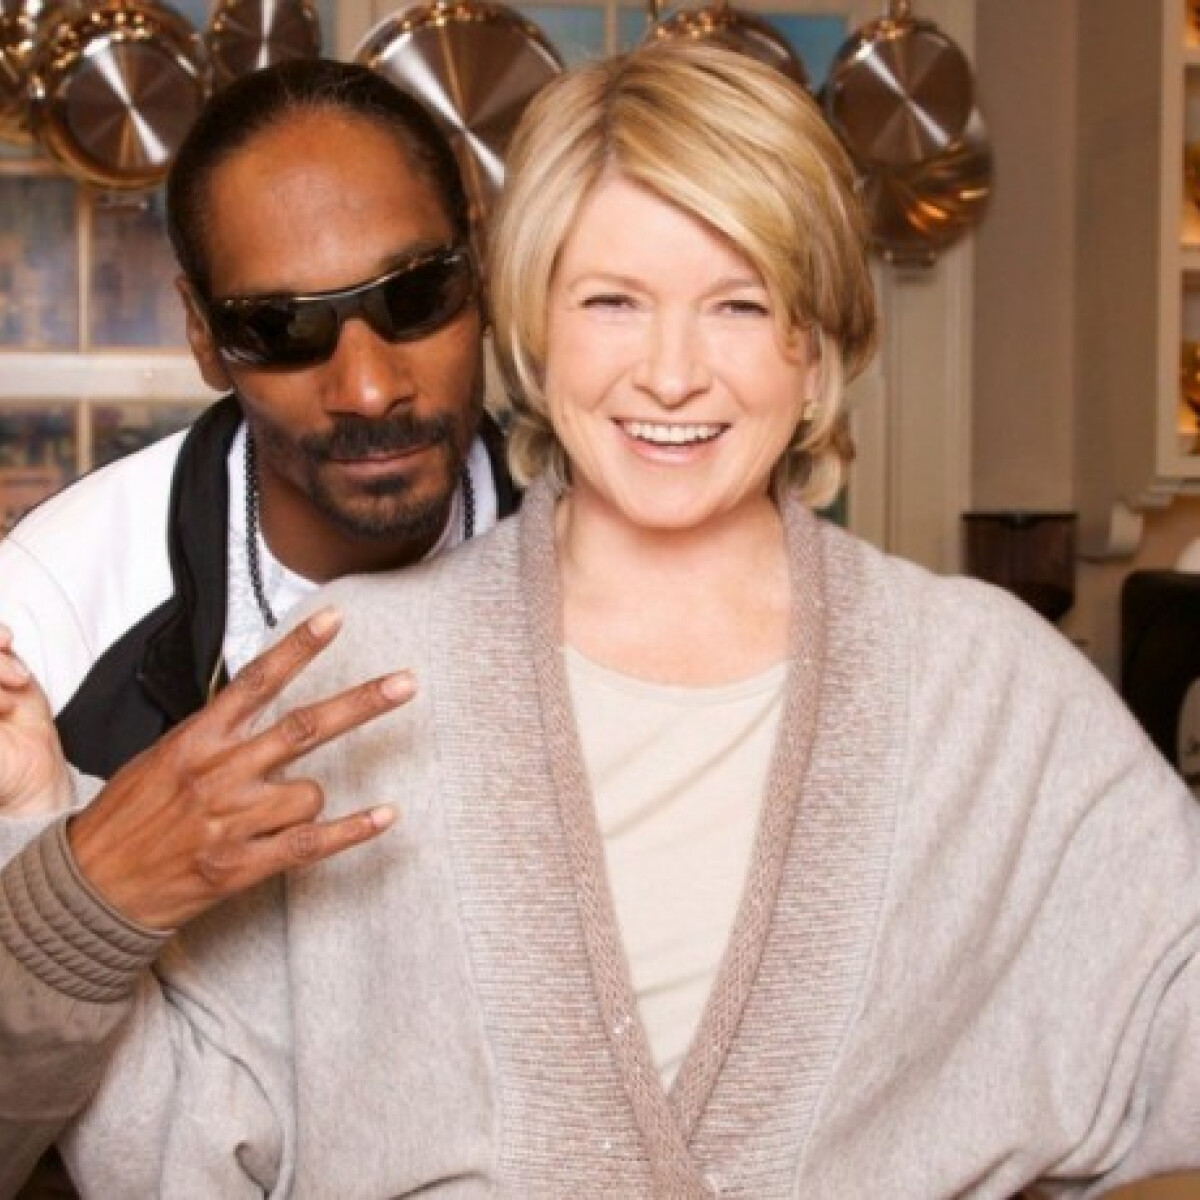 Martha Stewart Marosbogát kedvenc rapperével indít főzőműsort